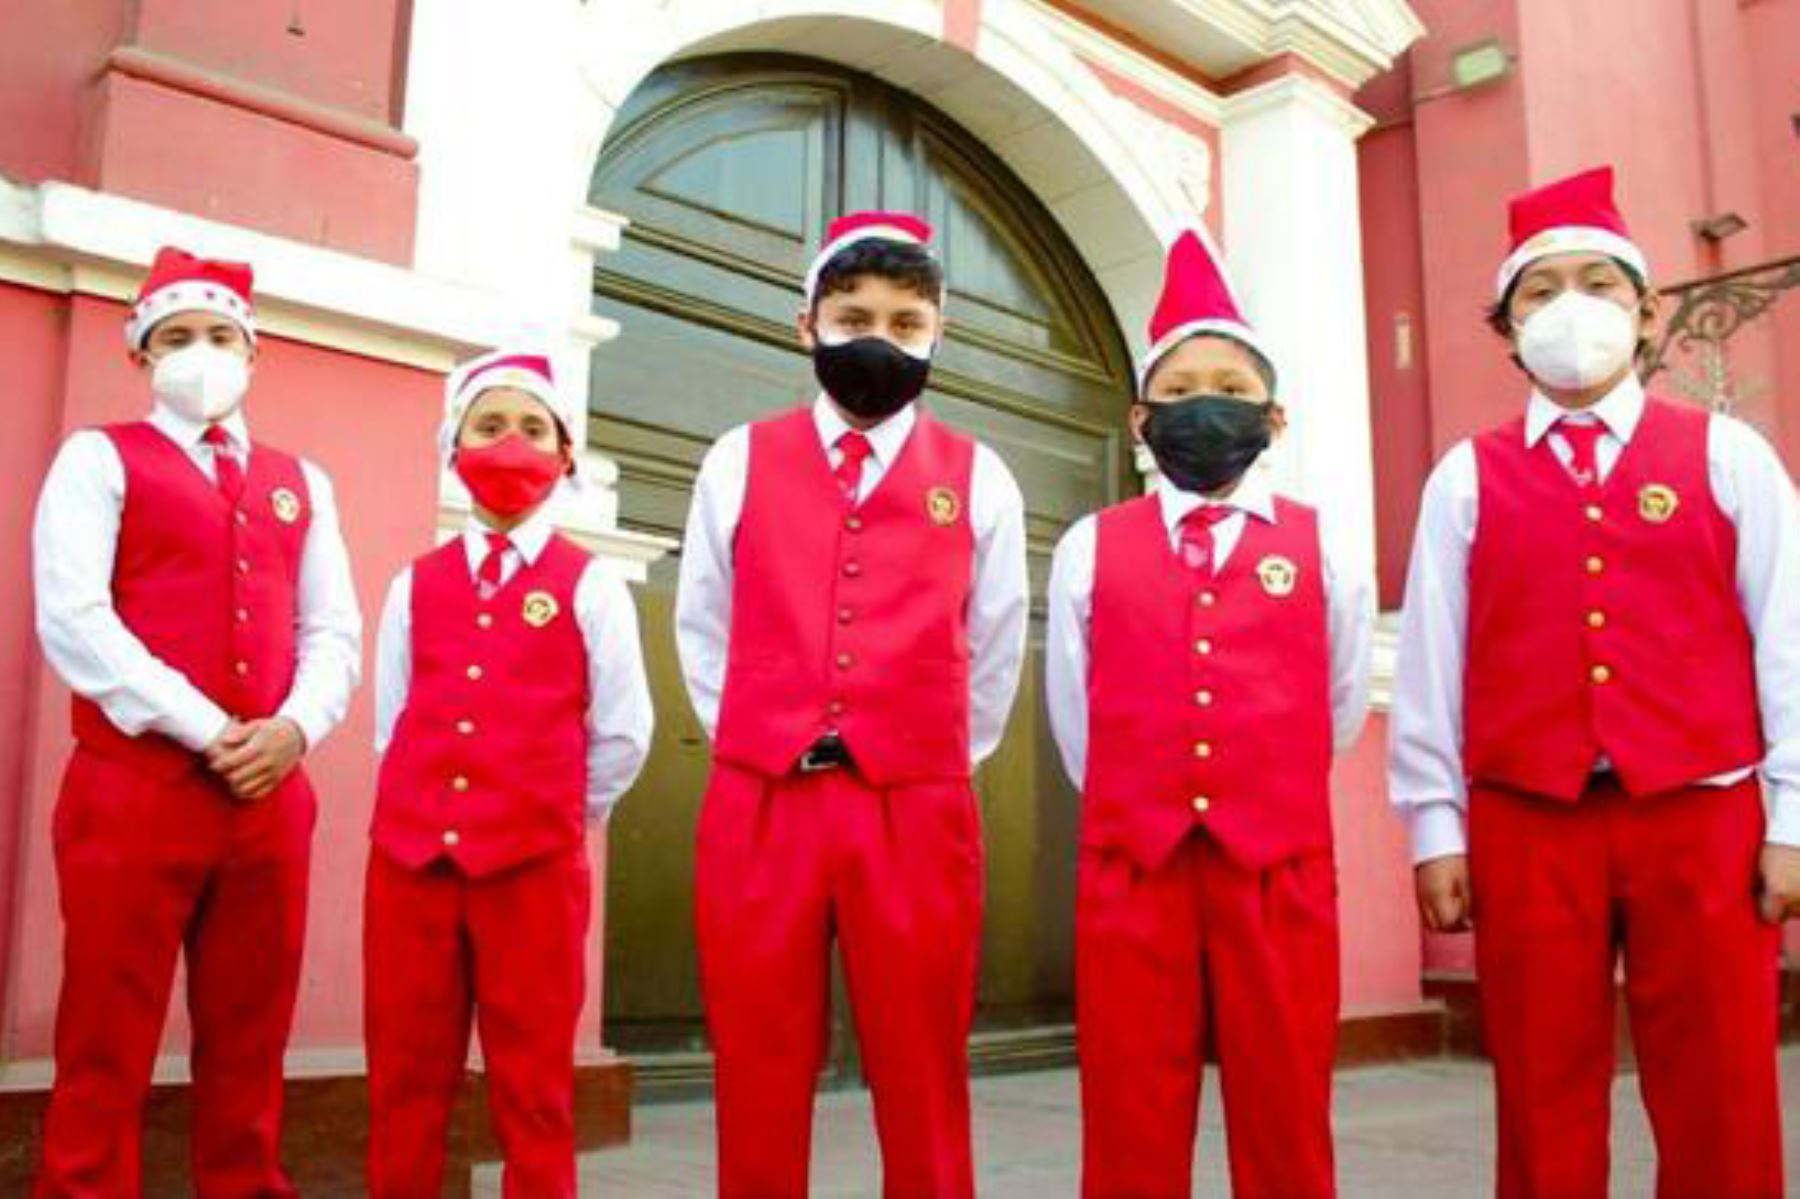 Los Toribianitos estrenan villancico navideño “Feliz Navidad, no bajes la guardia”. Foto: ANDINA/Difusión